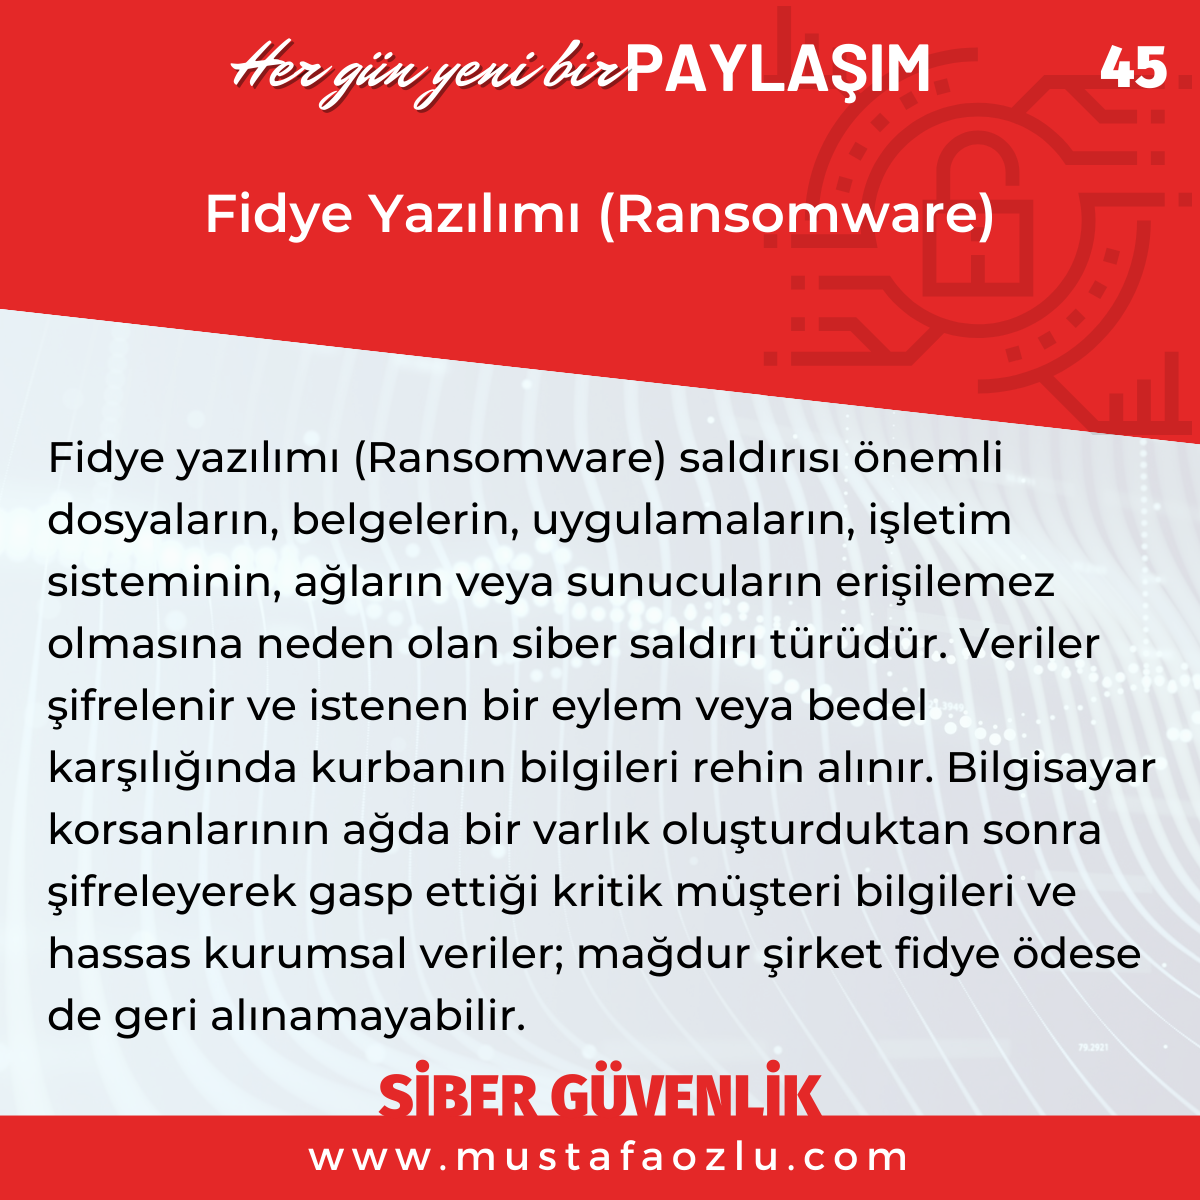 Fidye Yazılımı (Ransomware) - Mustafa ÖZLÜ